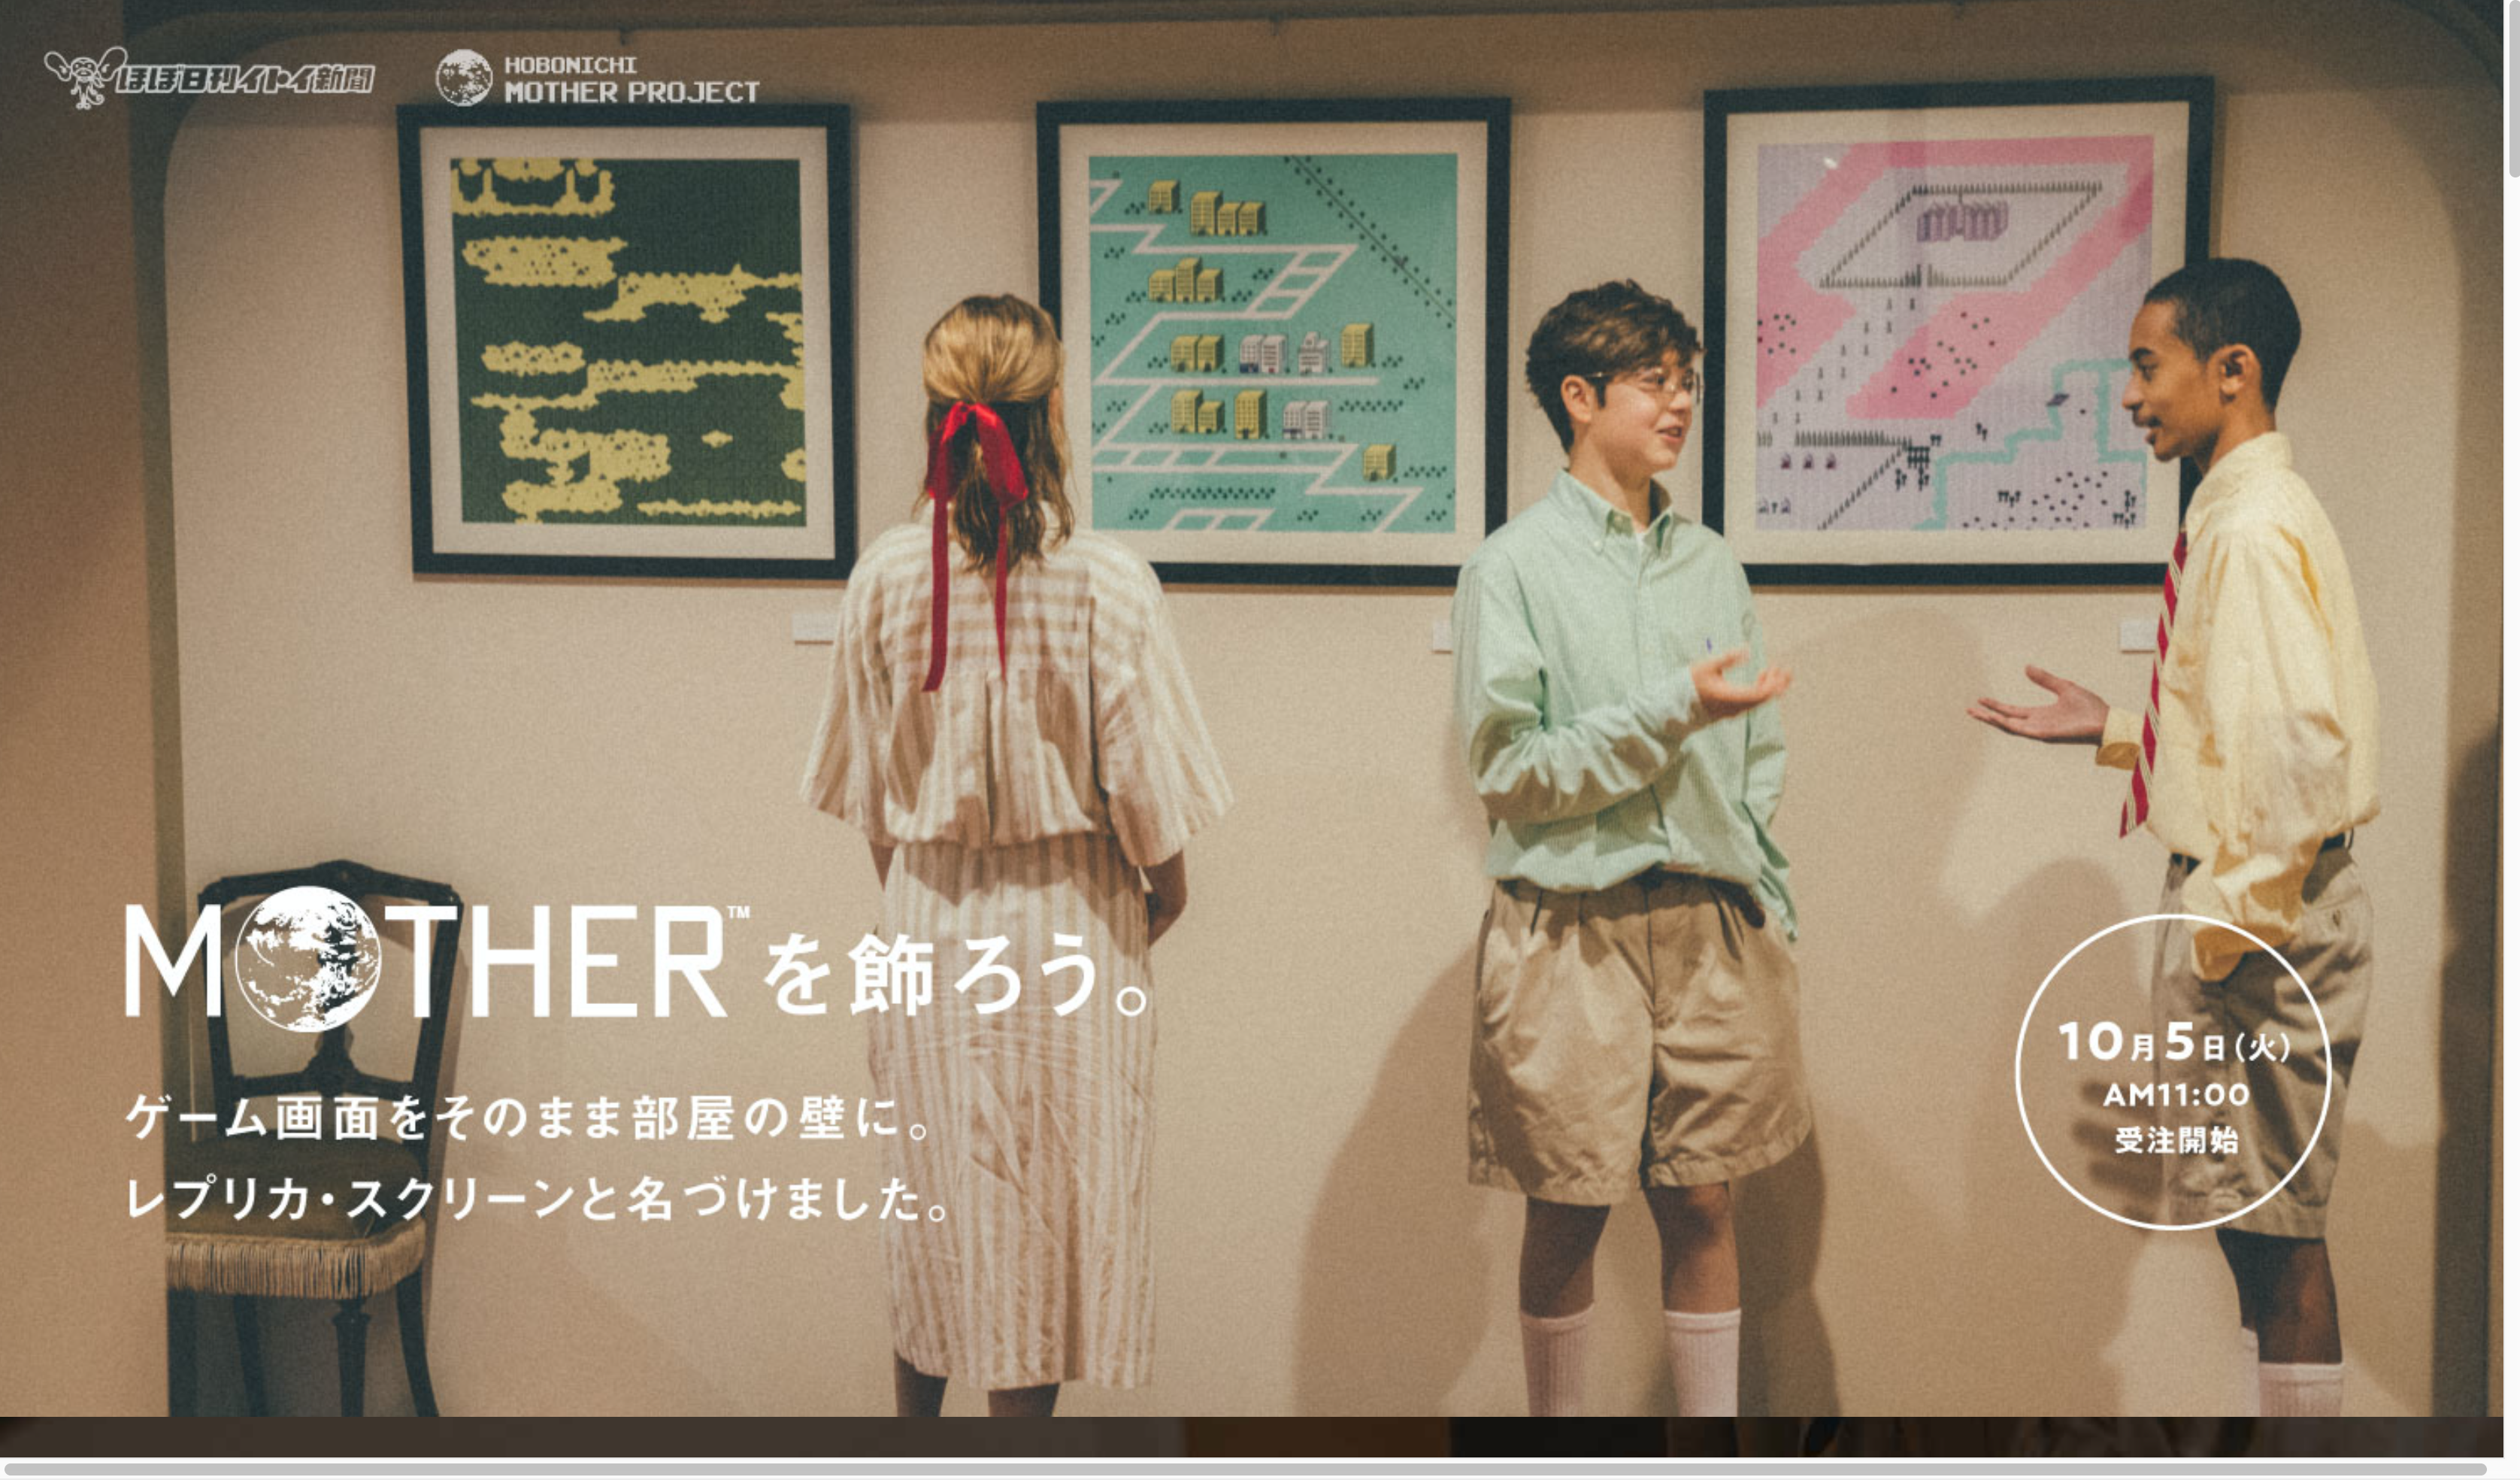 京都コンテンツ関連情報 いよいよ来週から Mother を飾ろう レプリカ スクリーン シリーズ 発売 申込期間は10月5日 11月2日まで Kyoto Cmex 京都シーメックス ポータルサイト